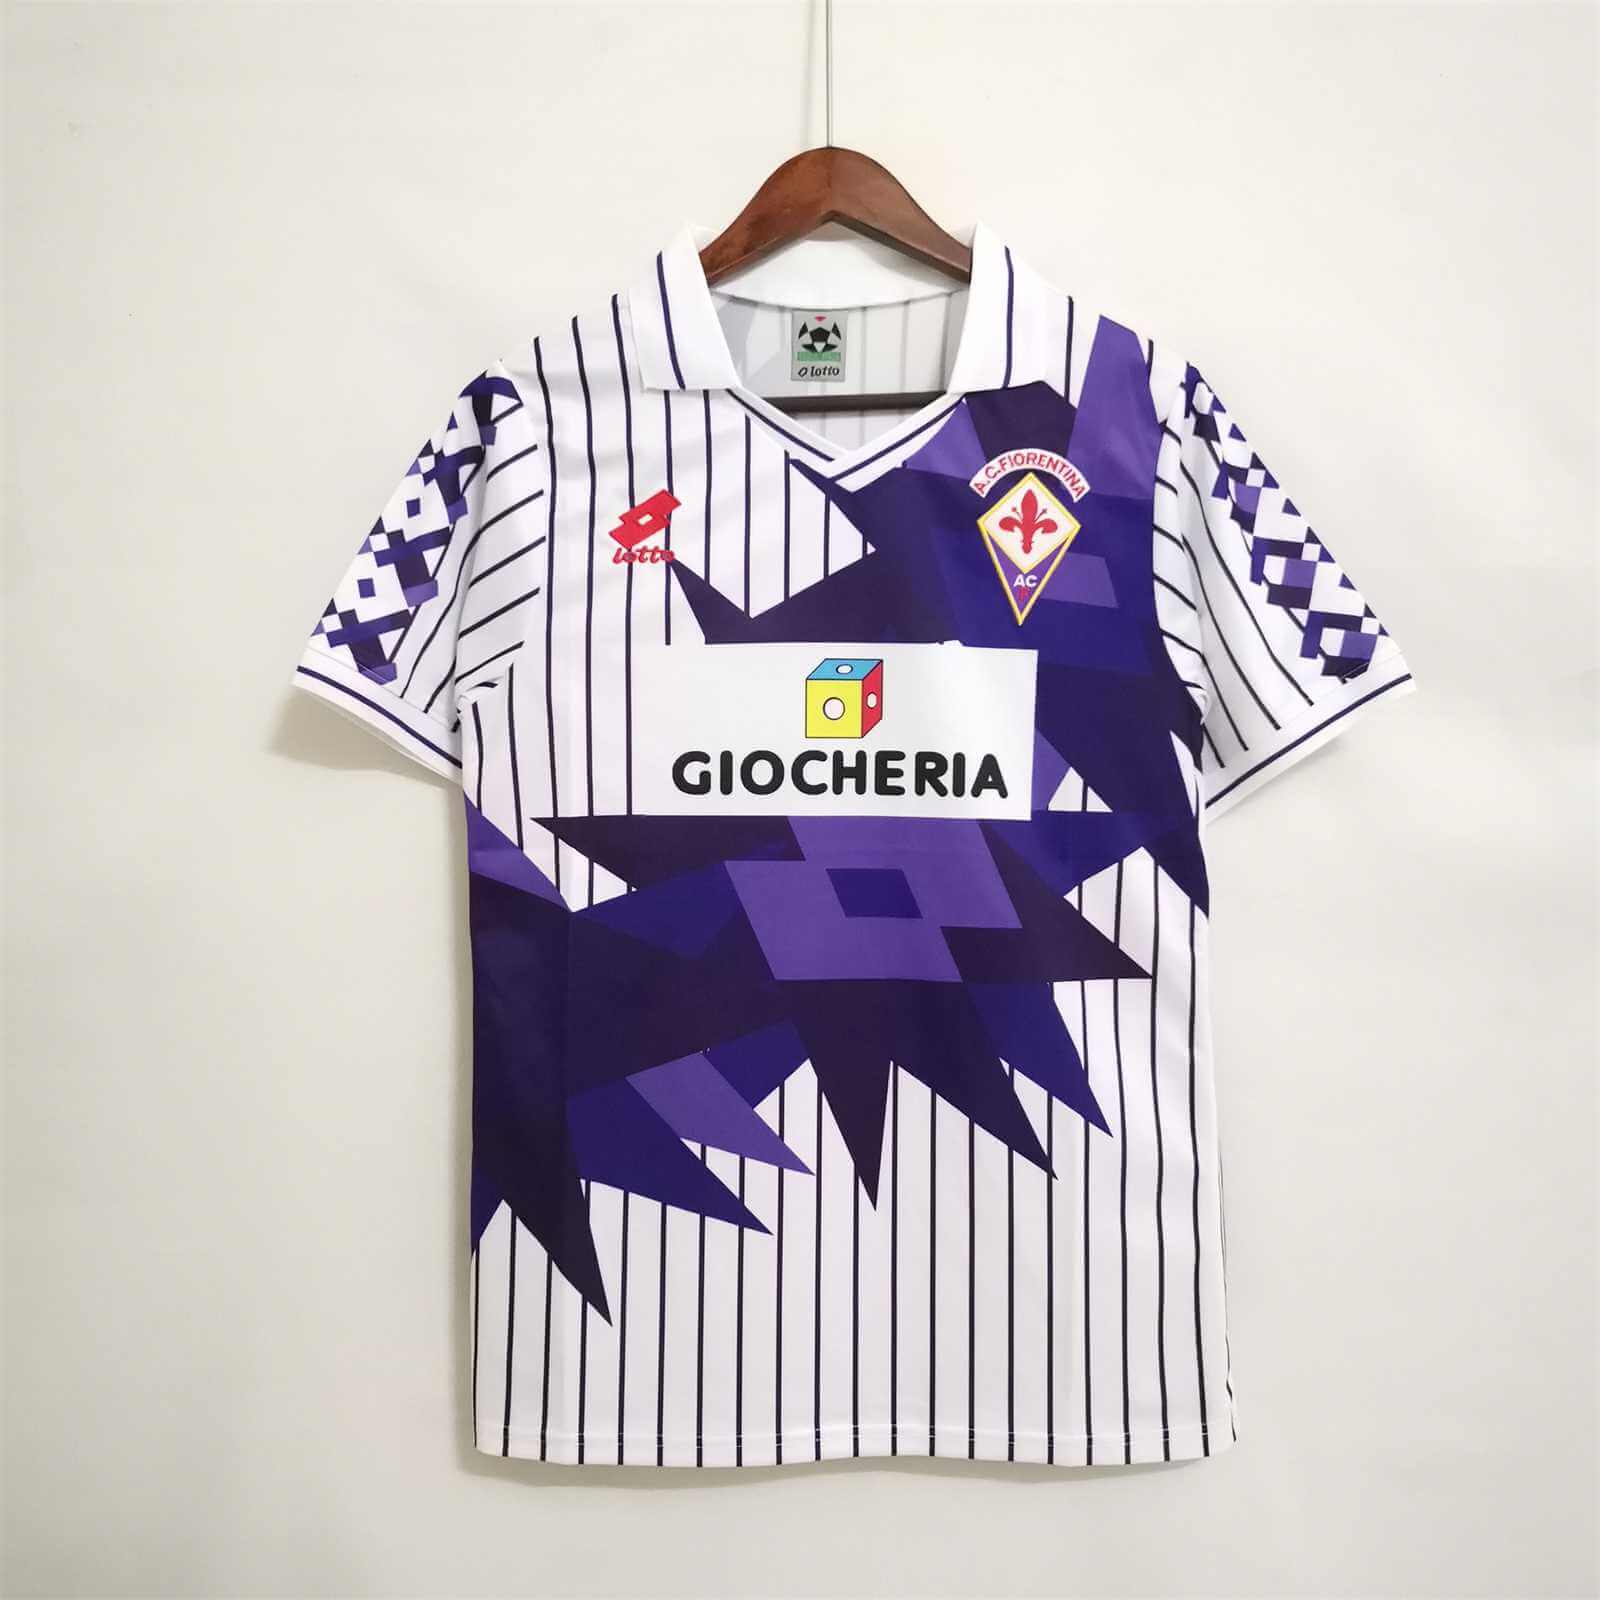 FIORENTINA FLORENCE 1991/1992 Away Kit